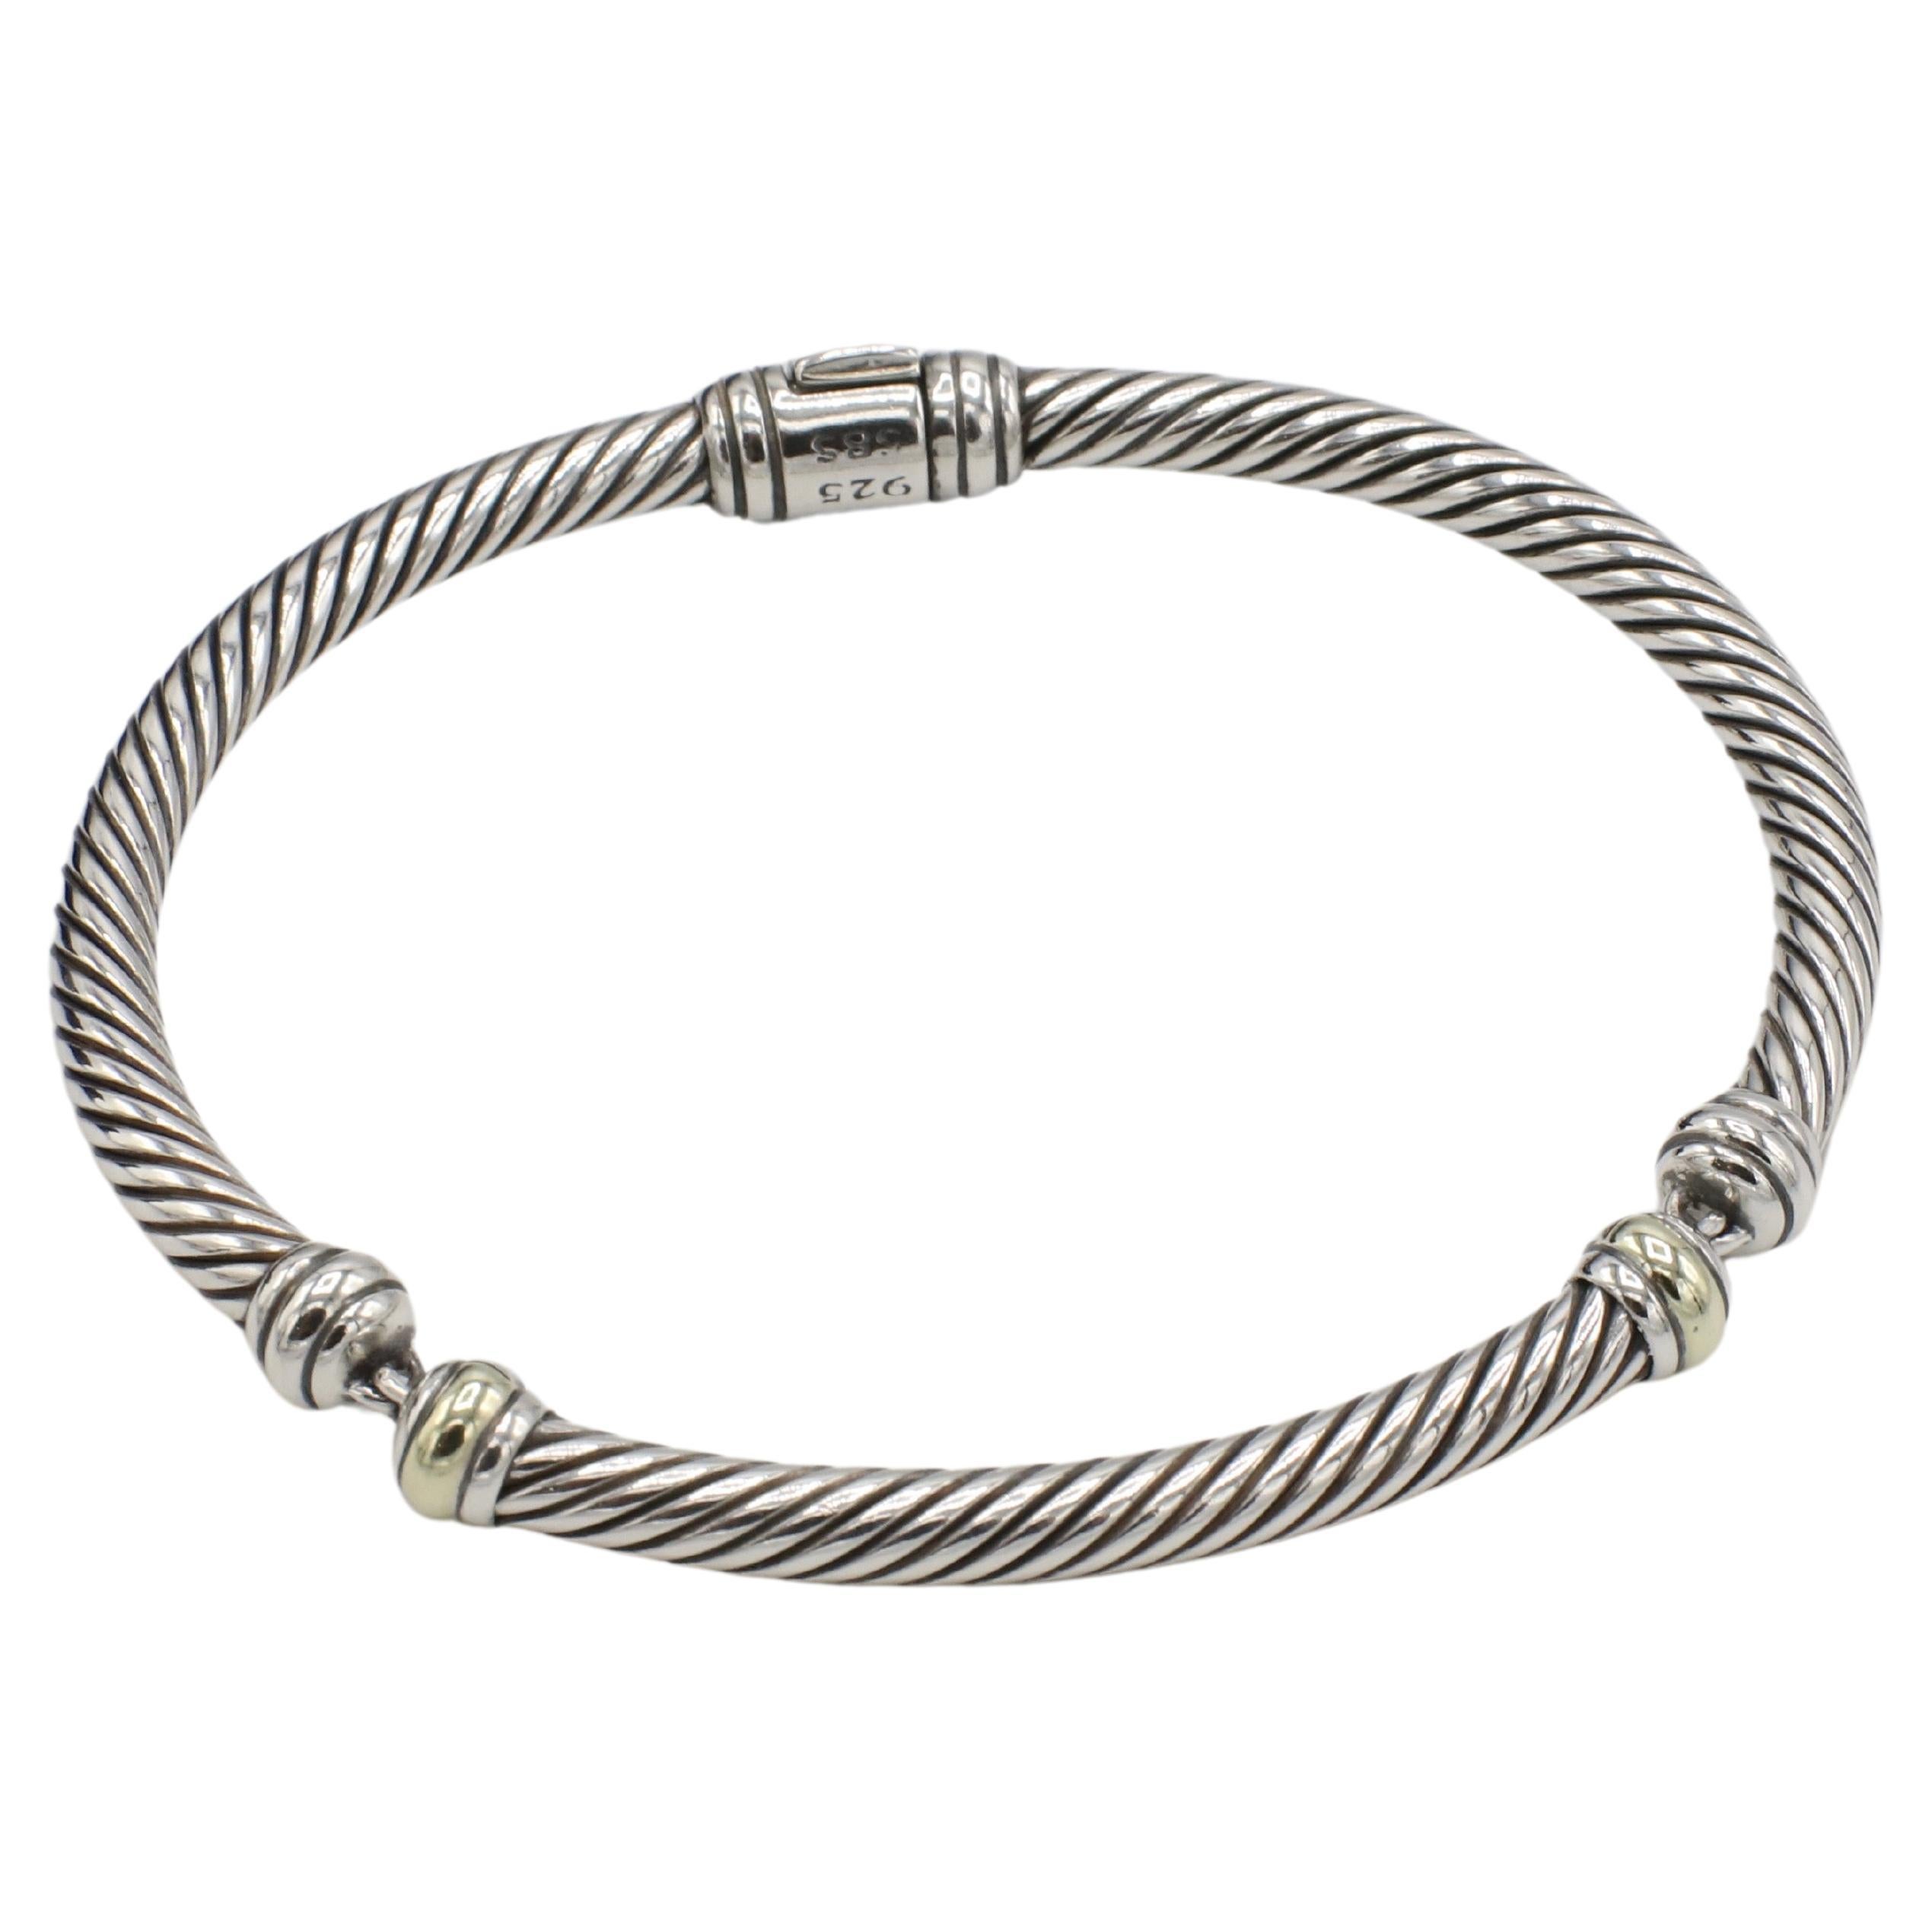 David Yurman Sterling Silver & Gold 3 Section Cable Bangle Bracelet Bracelet 